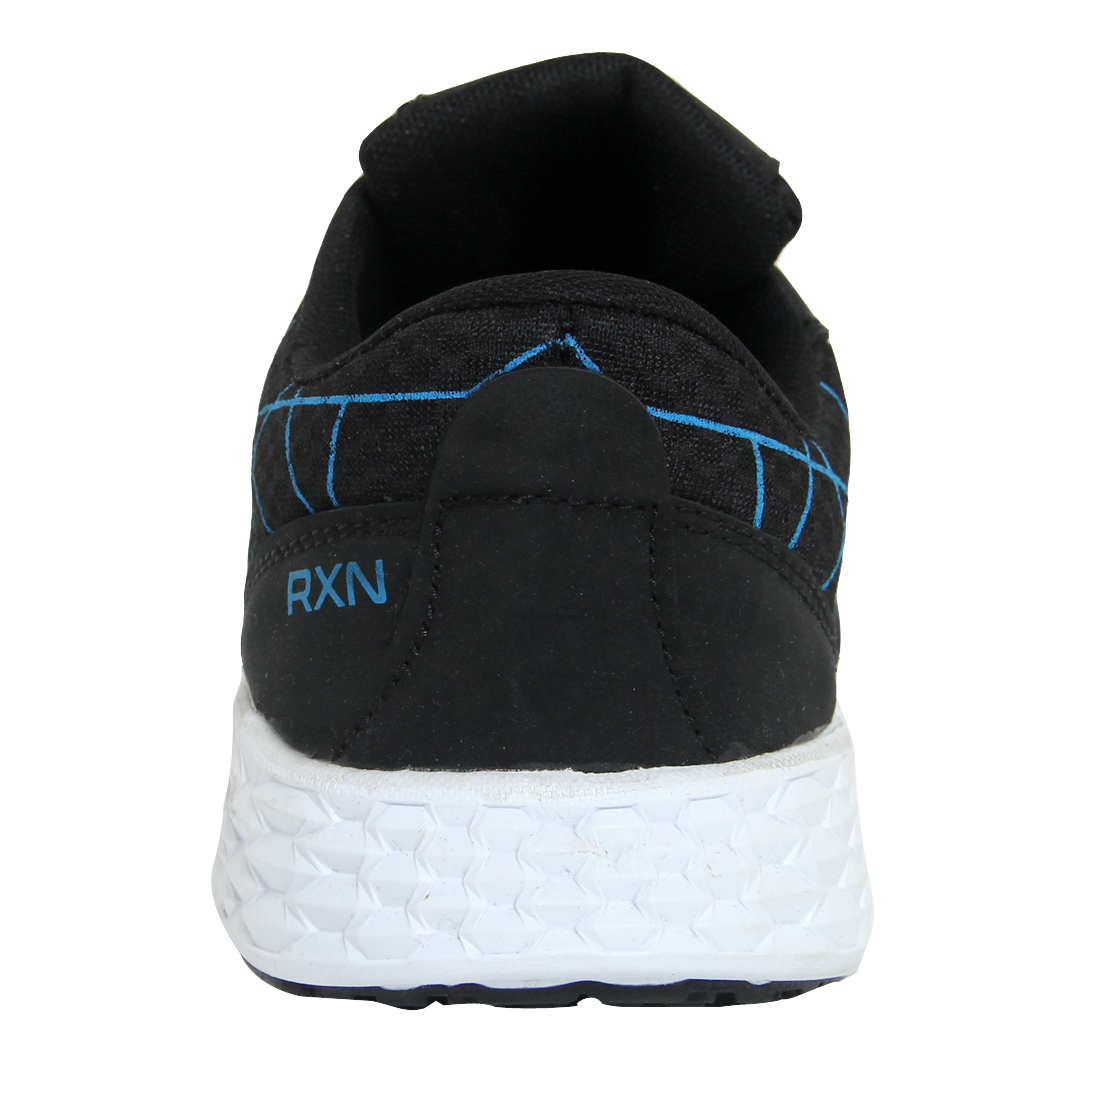 RXN Maze Runner Shoes – RXN